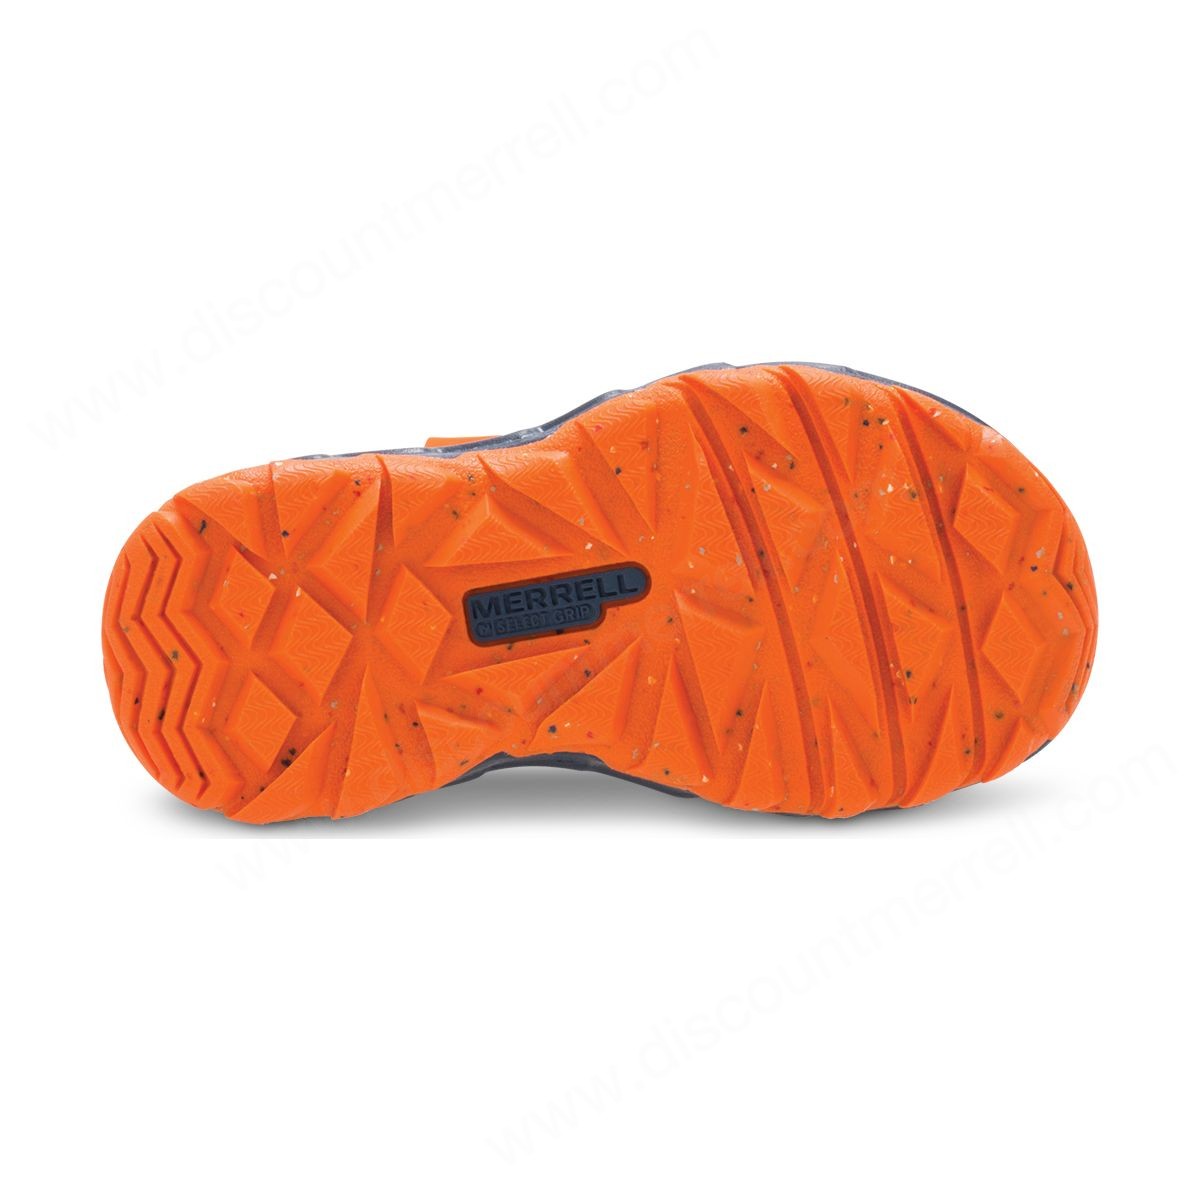 Merrell Little Kid's Hydro Junior . Sneakers Sandal Navy/orange - -3